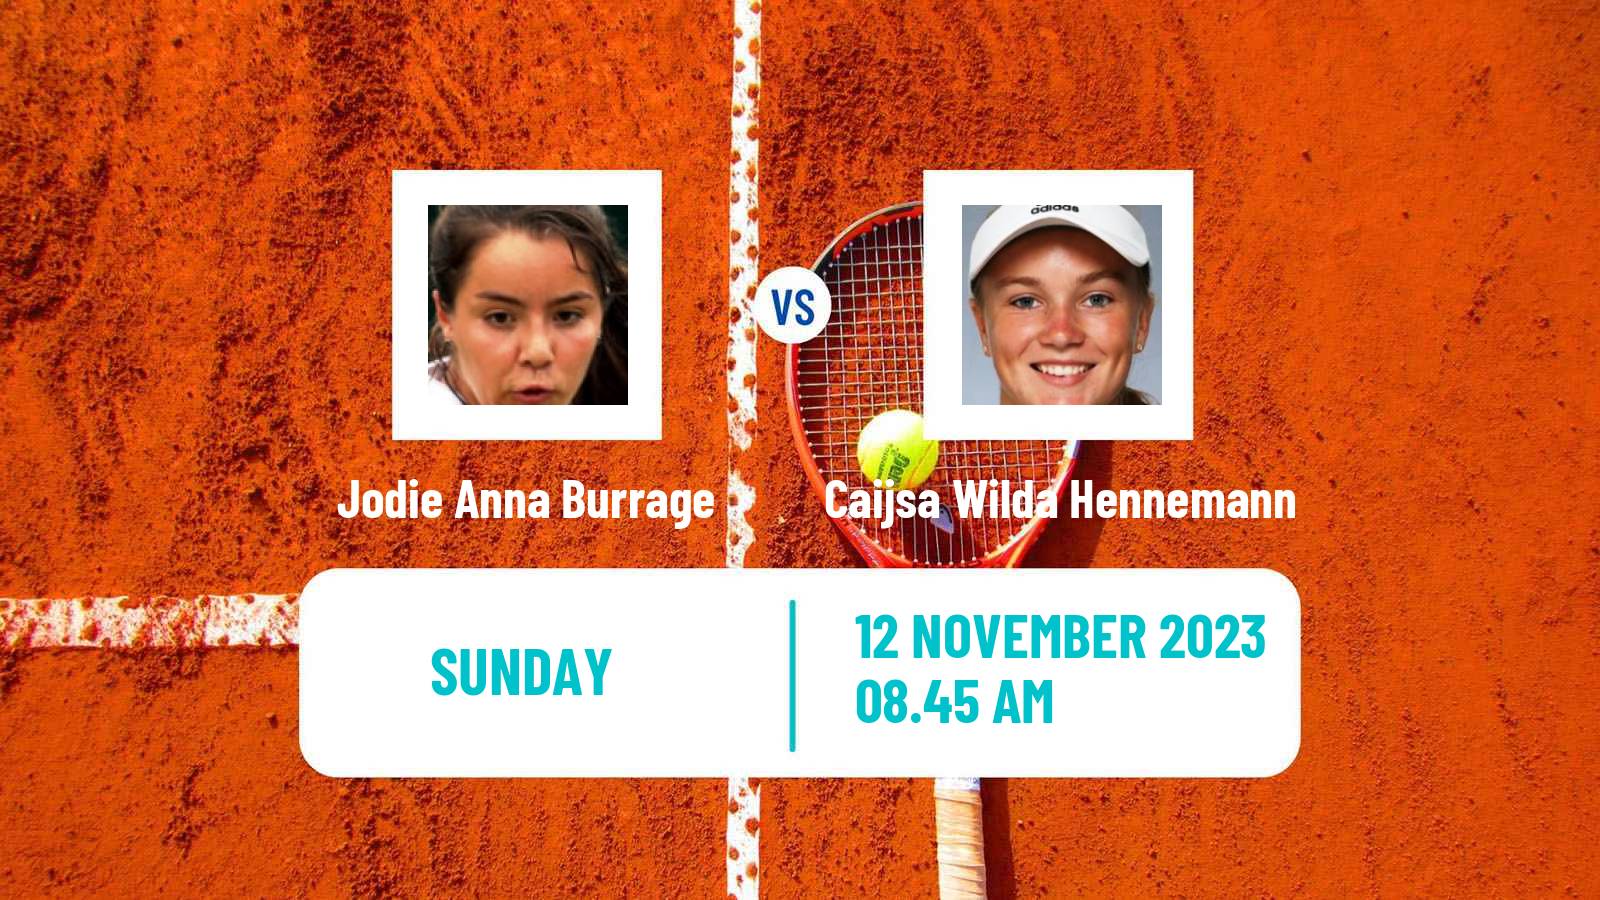 Tennis WTA Billie Jean King Cup World Group Jodie Anna Burrage - Caijsa Wilda Hennemann